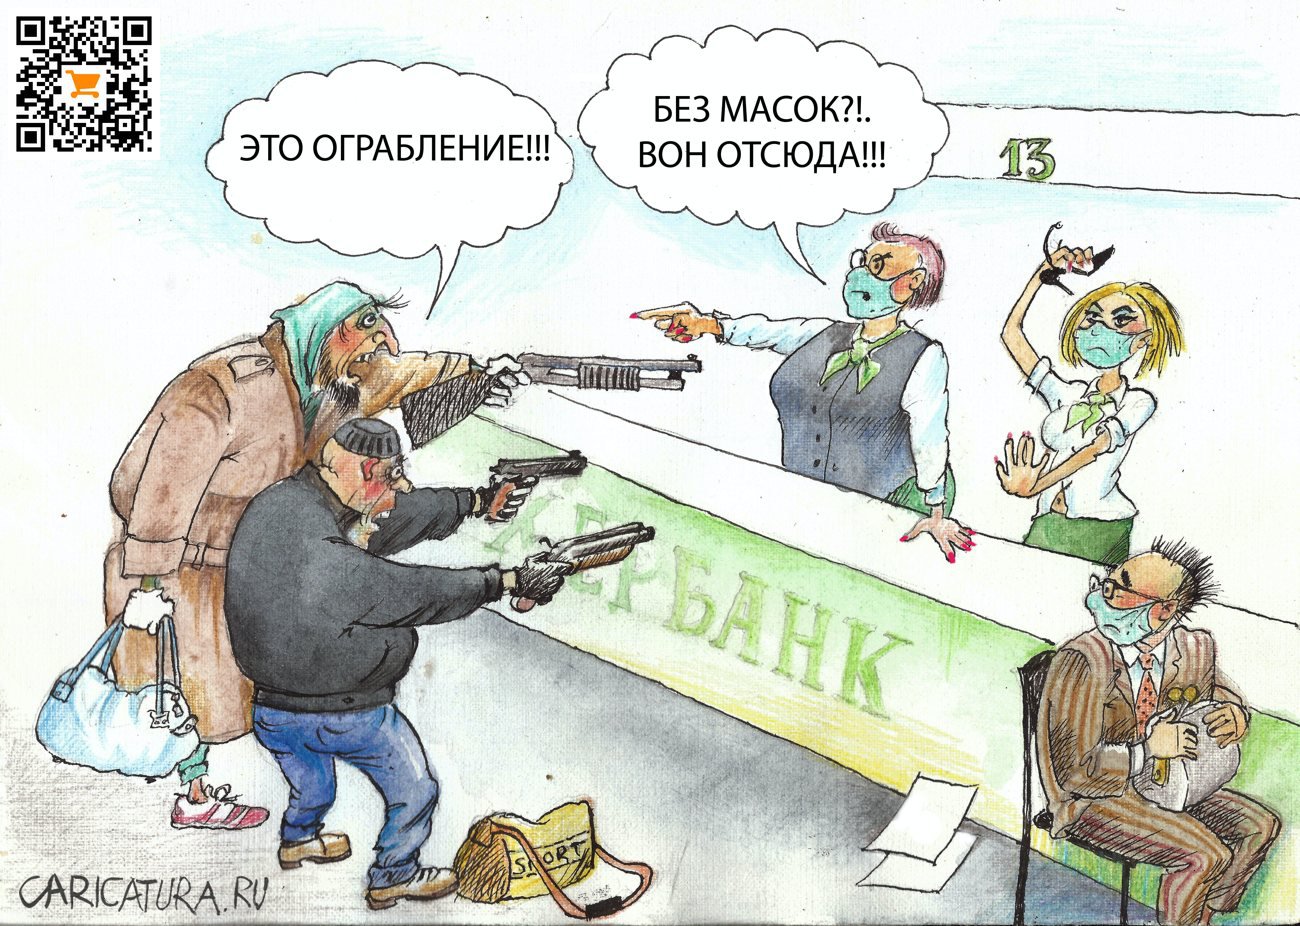 Карикатура "Ограбление!", Александр Шульпинов